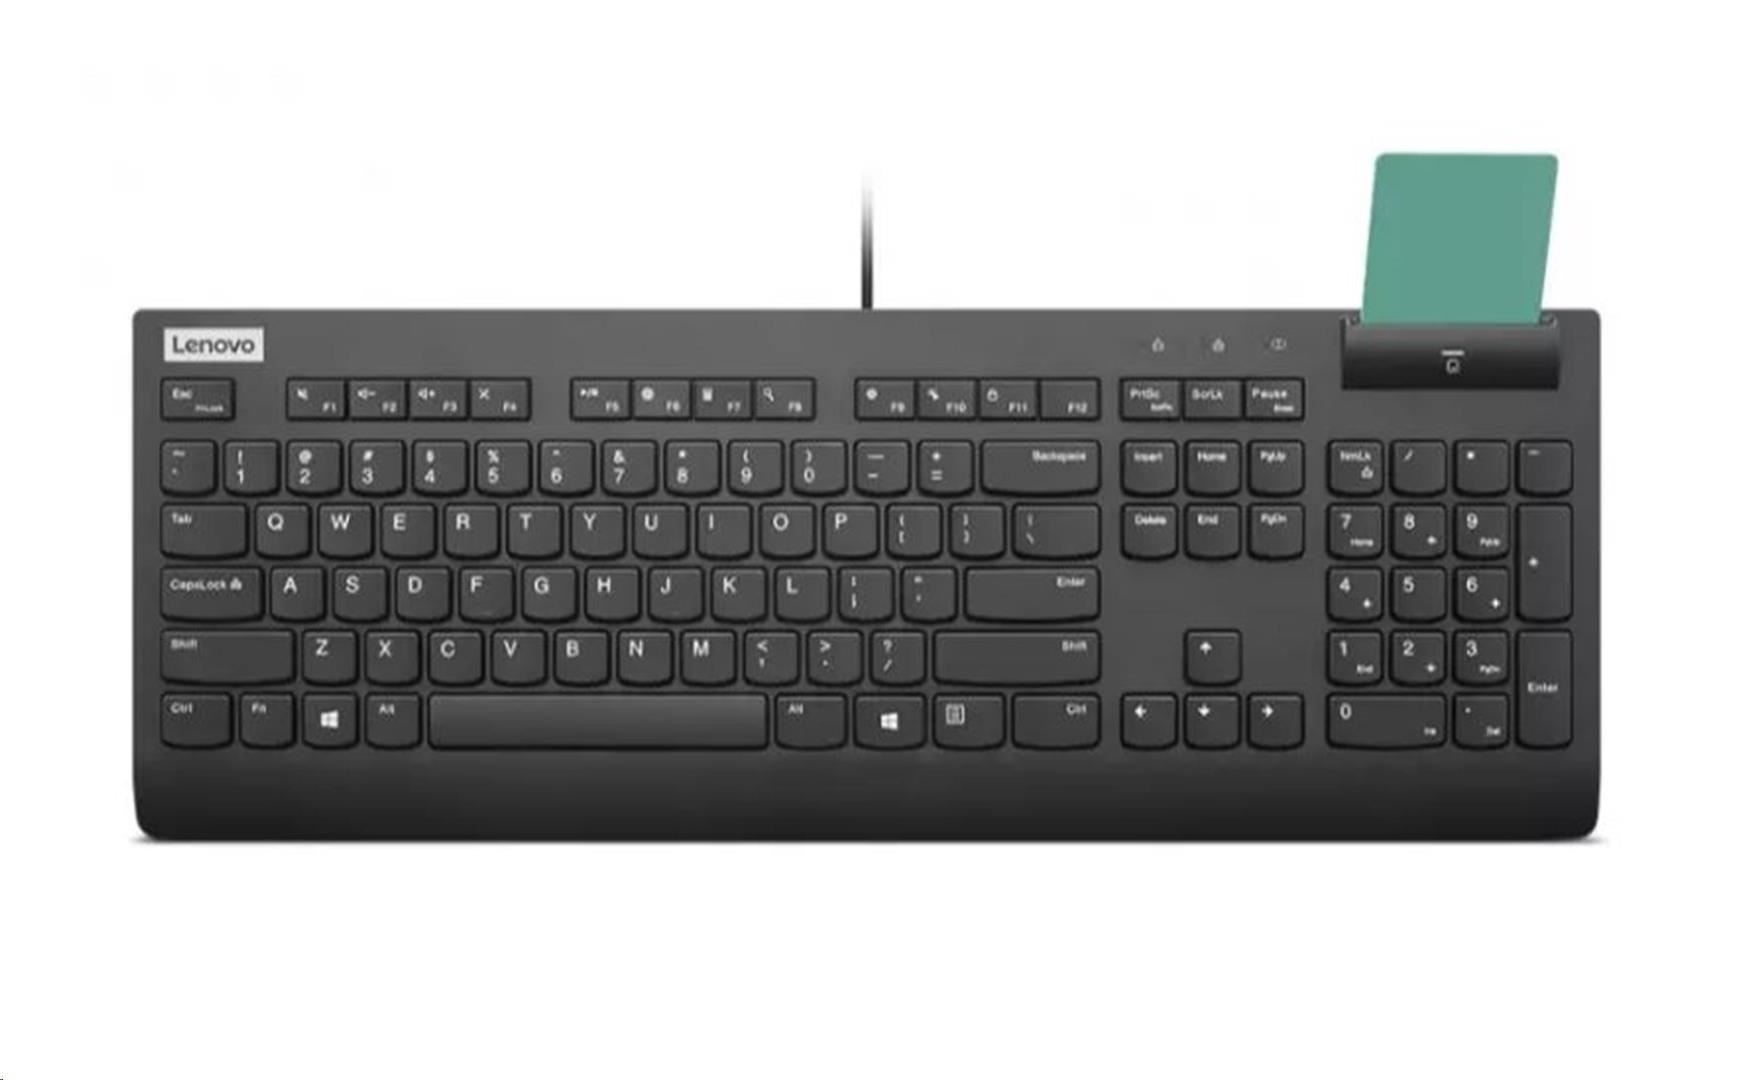 LENOVO klávesnice drátová Smartcard Keyboard II CZ/SK - USB, černá0 